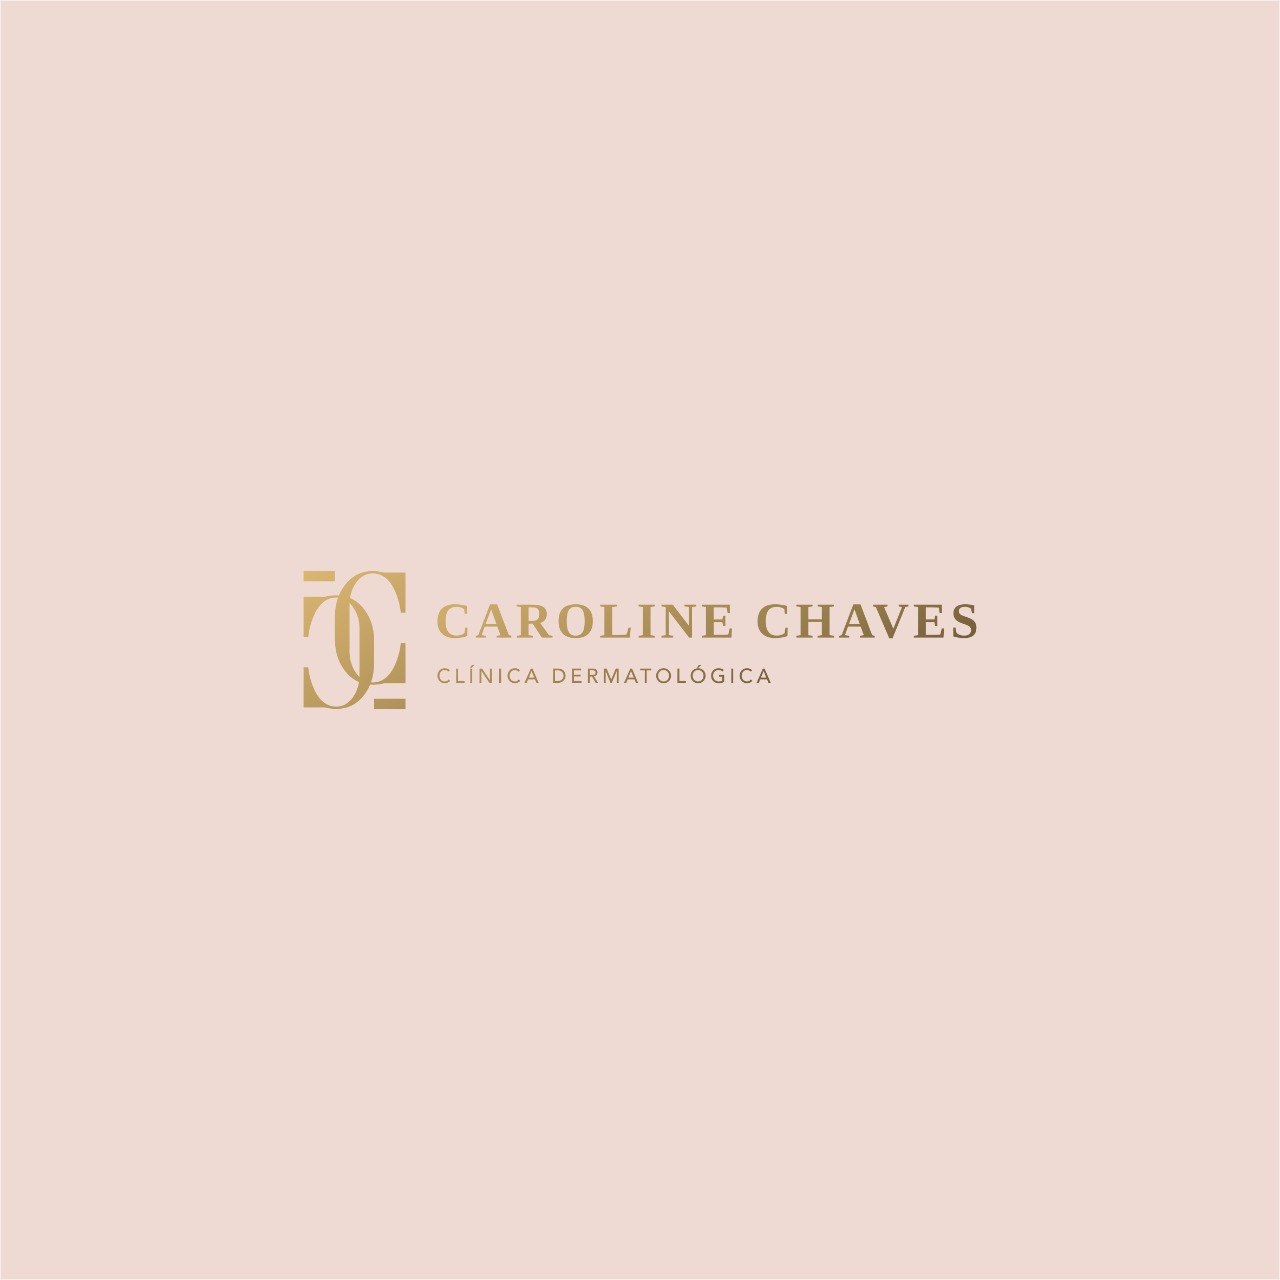 Caroline Chaves Clínica Dermatológica